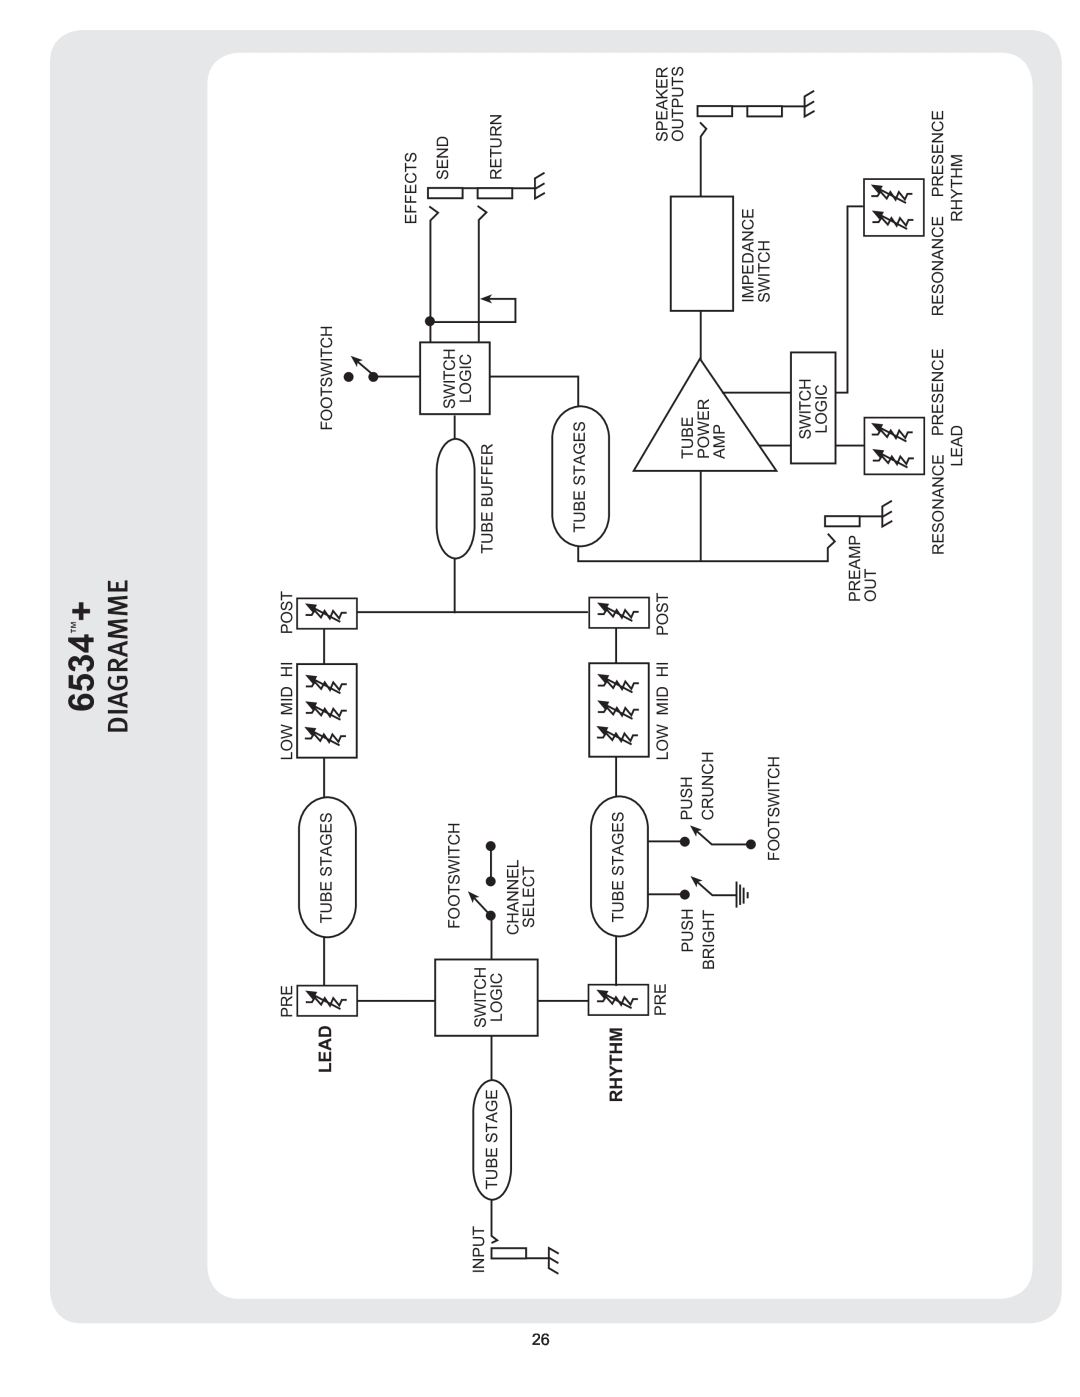 Peavey manual 6534Š+, Signal Flow Block Diagram 